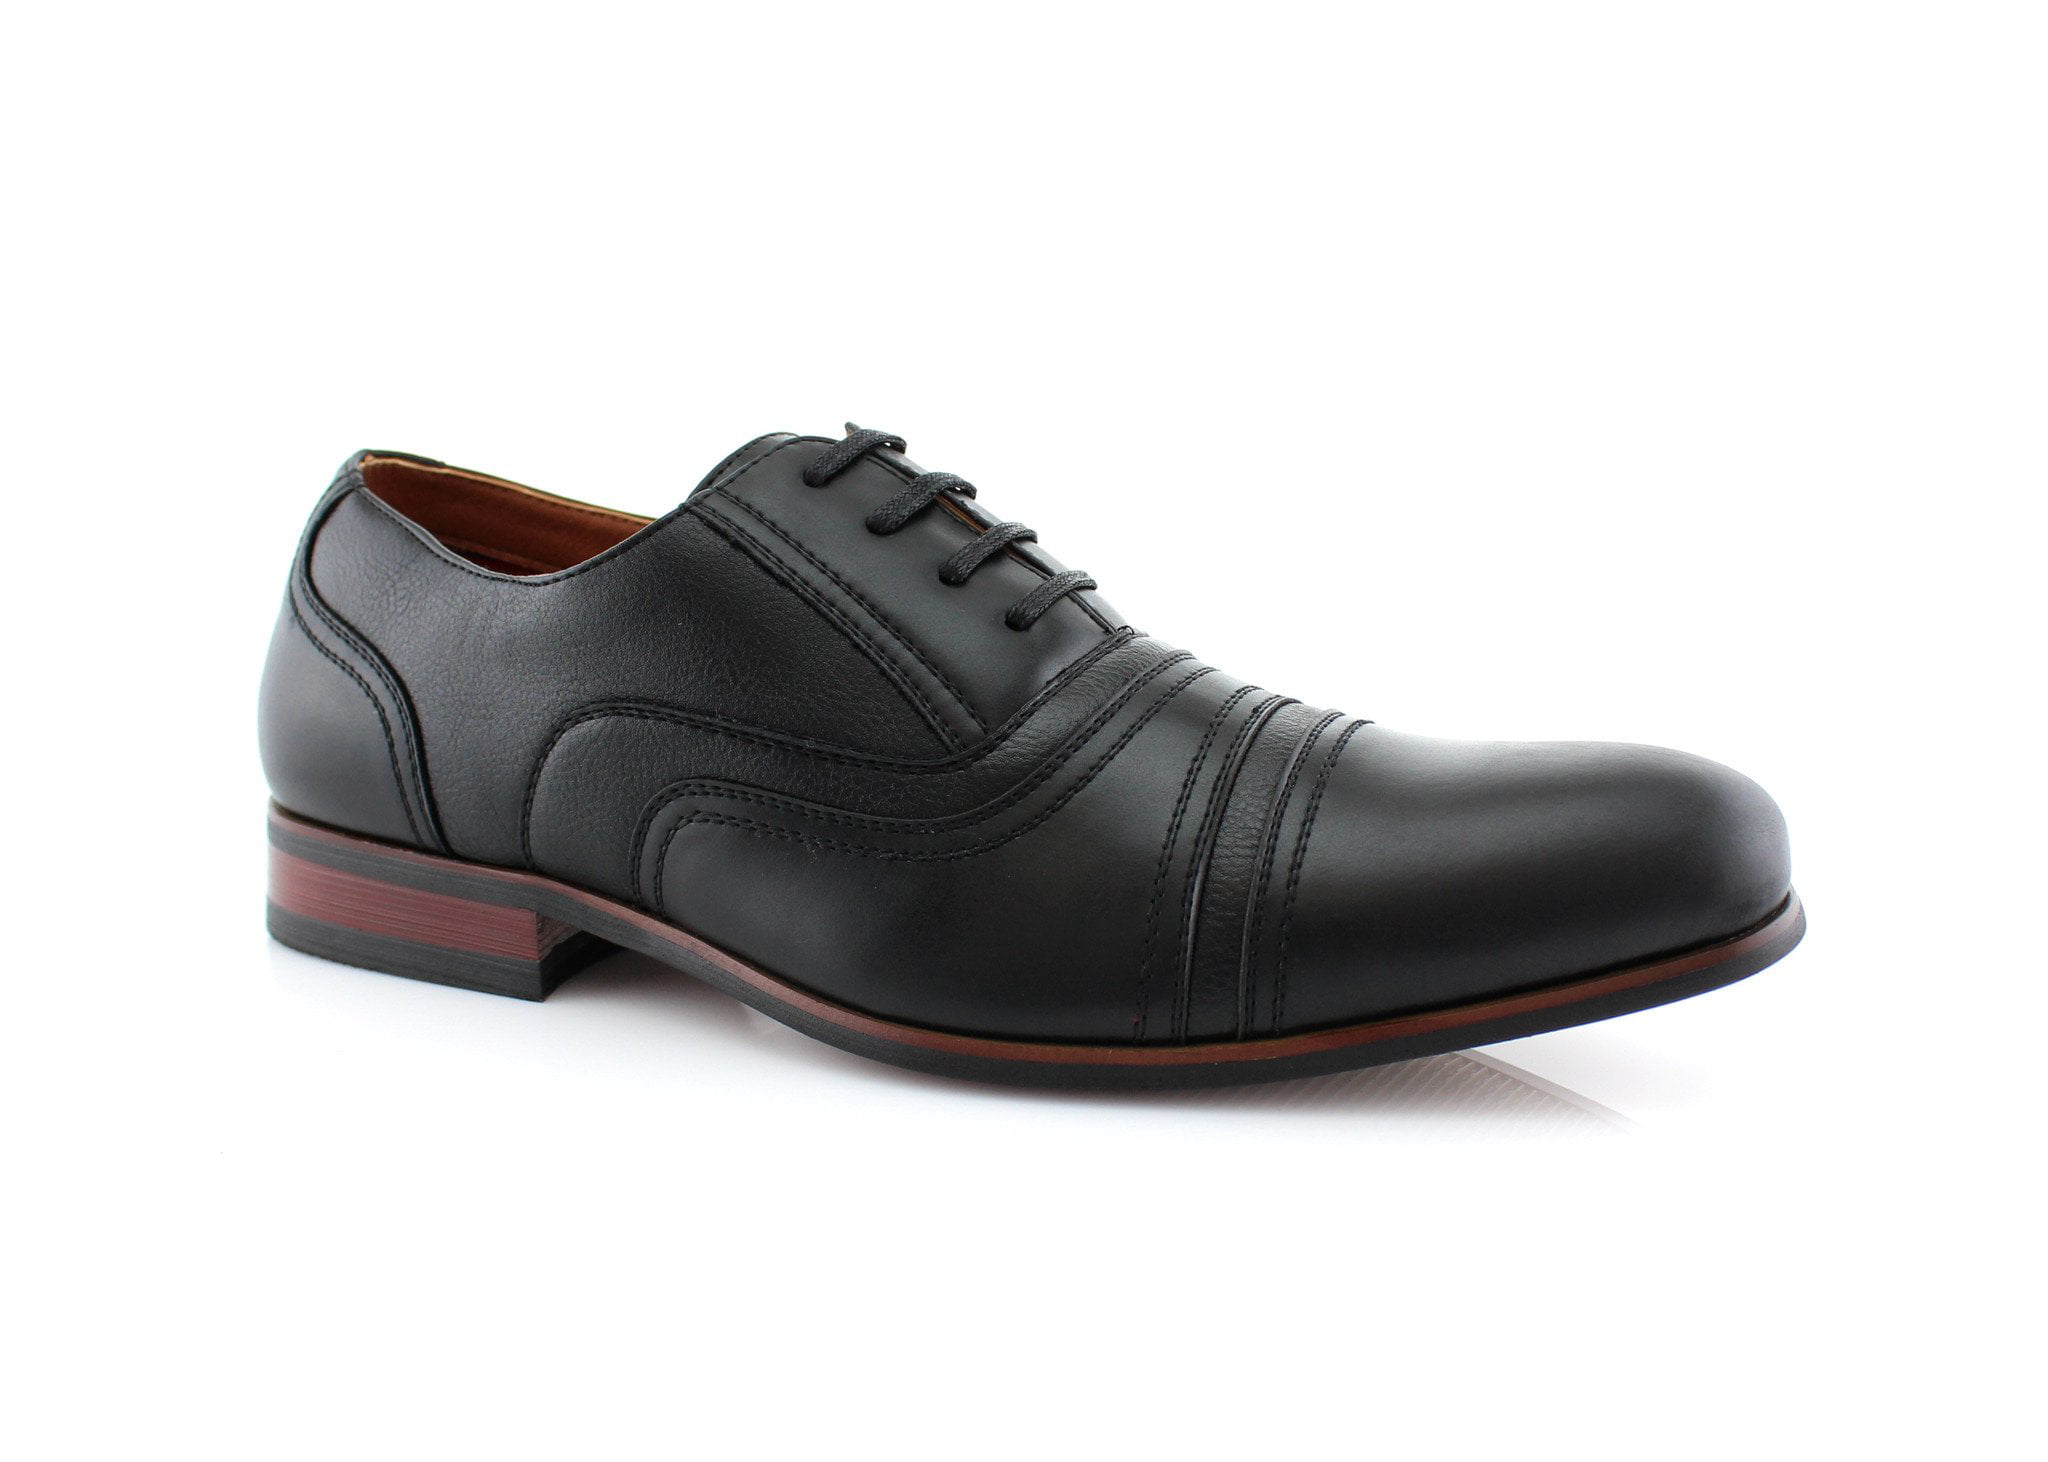 Details about   Retro Men Dress Formal Faux Leather Shoes Business Work Oxfords Non-slip Party D 